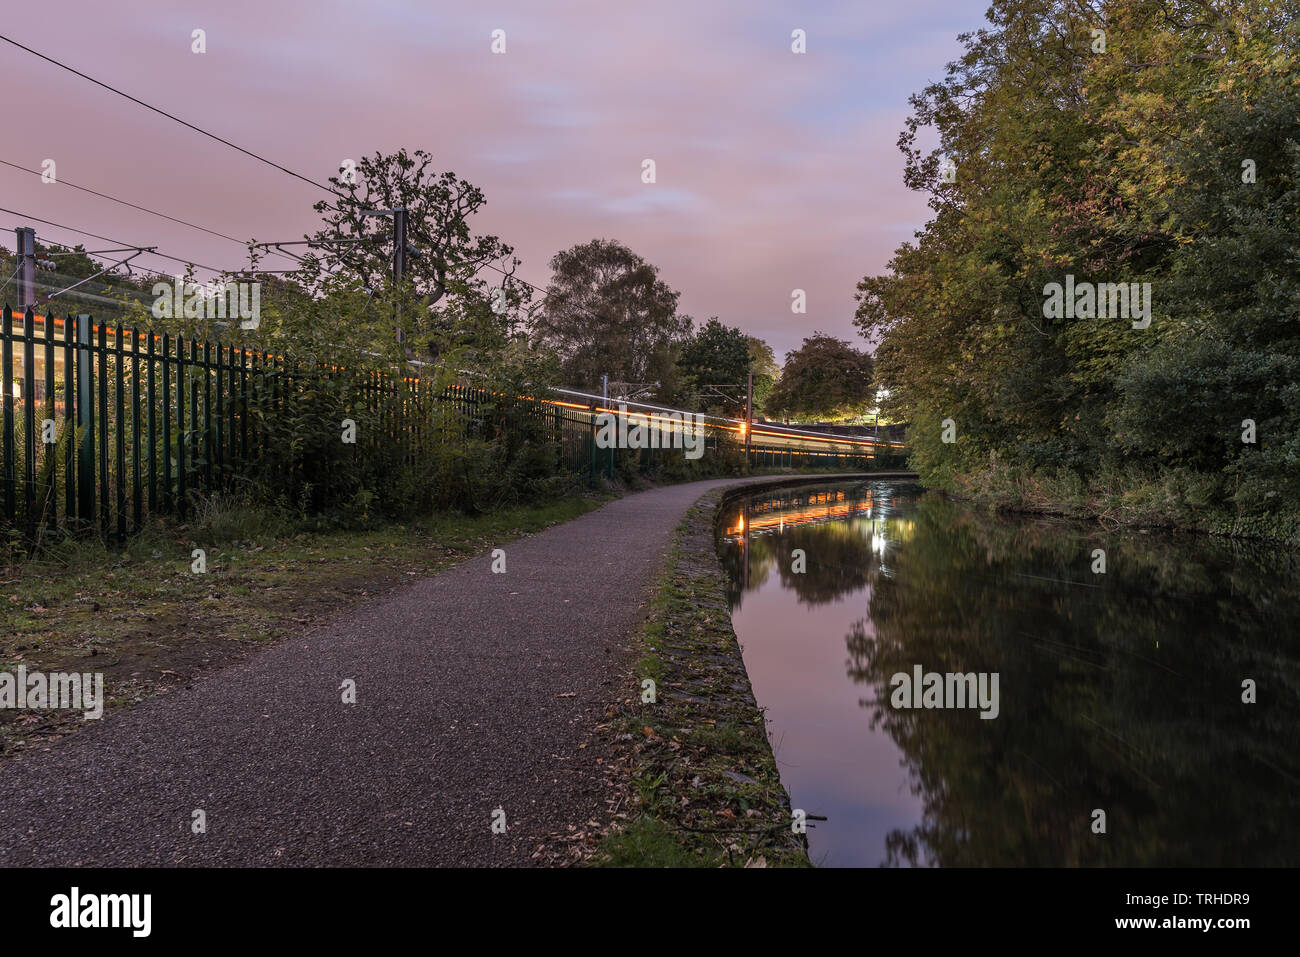 Worcester à Birmingham Canal, en Angleterre, UK. Le sentier le long du canal, avec un train en passant le long de côté. Le ciel commence à foncé Banque D'Images